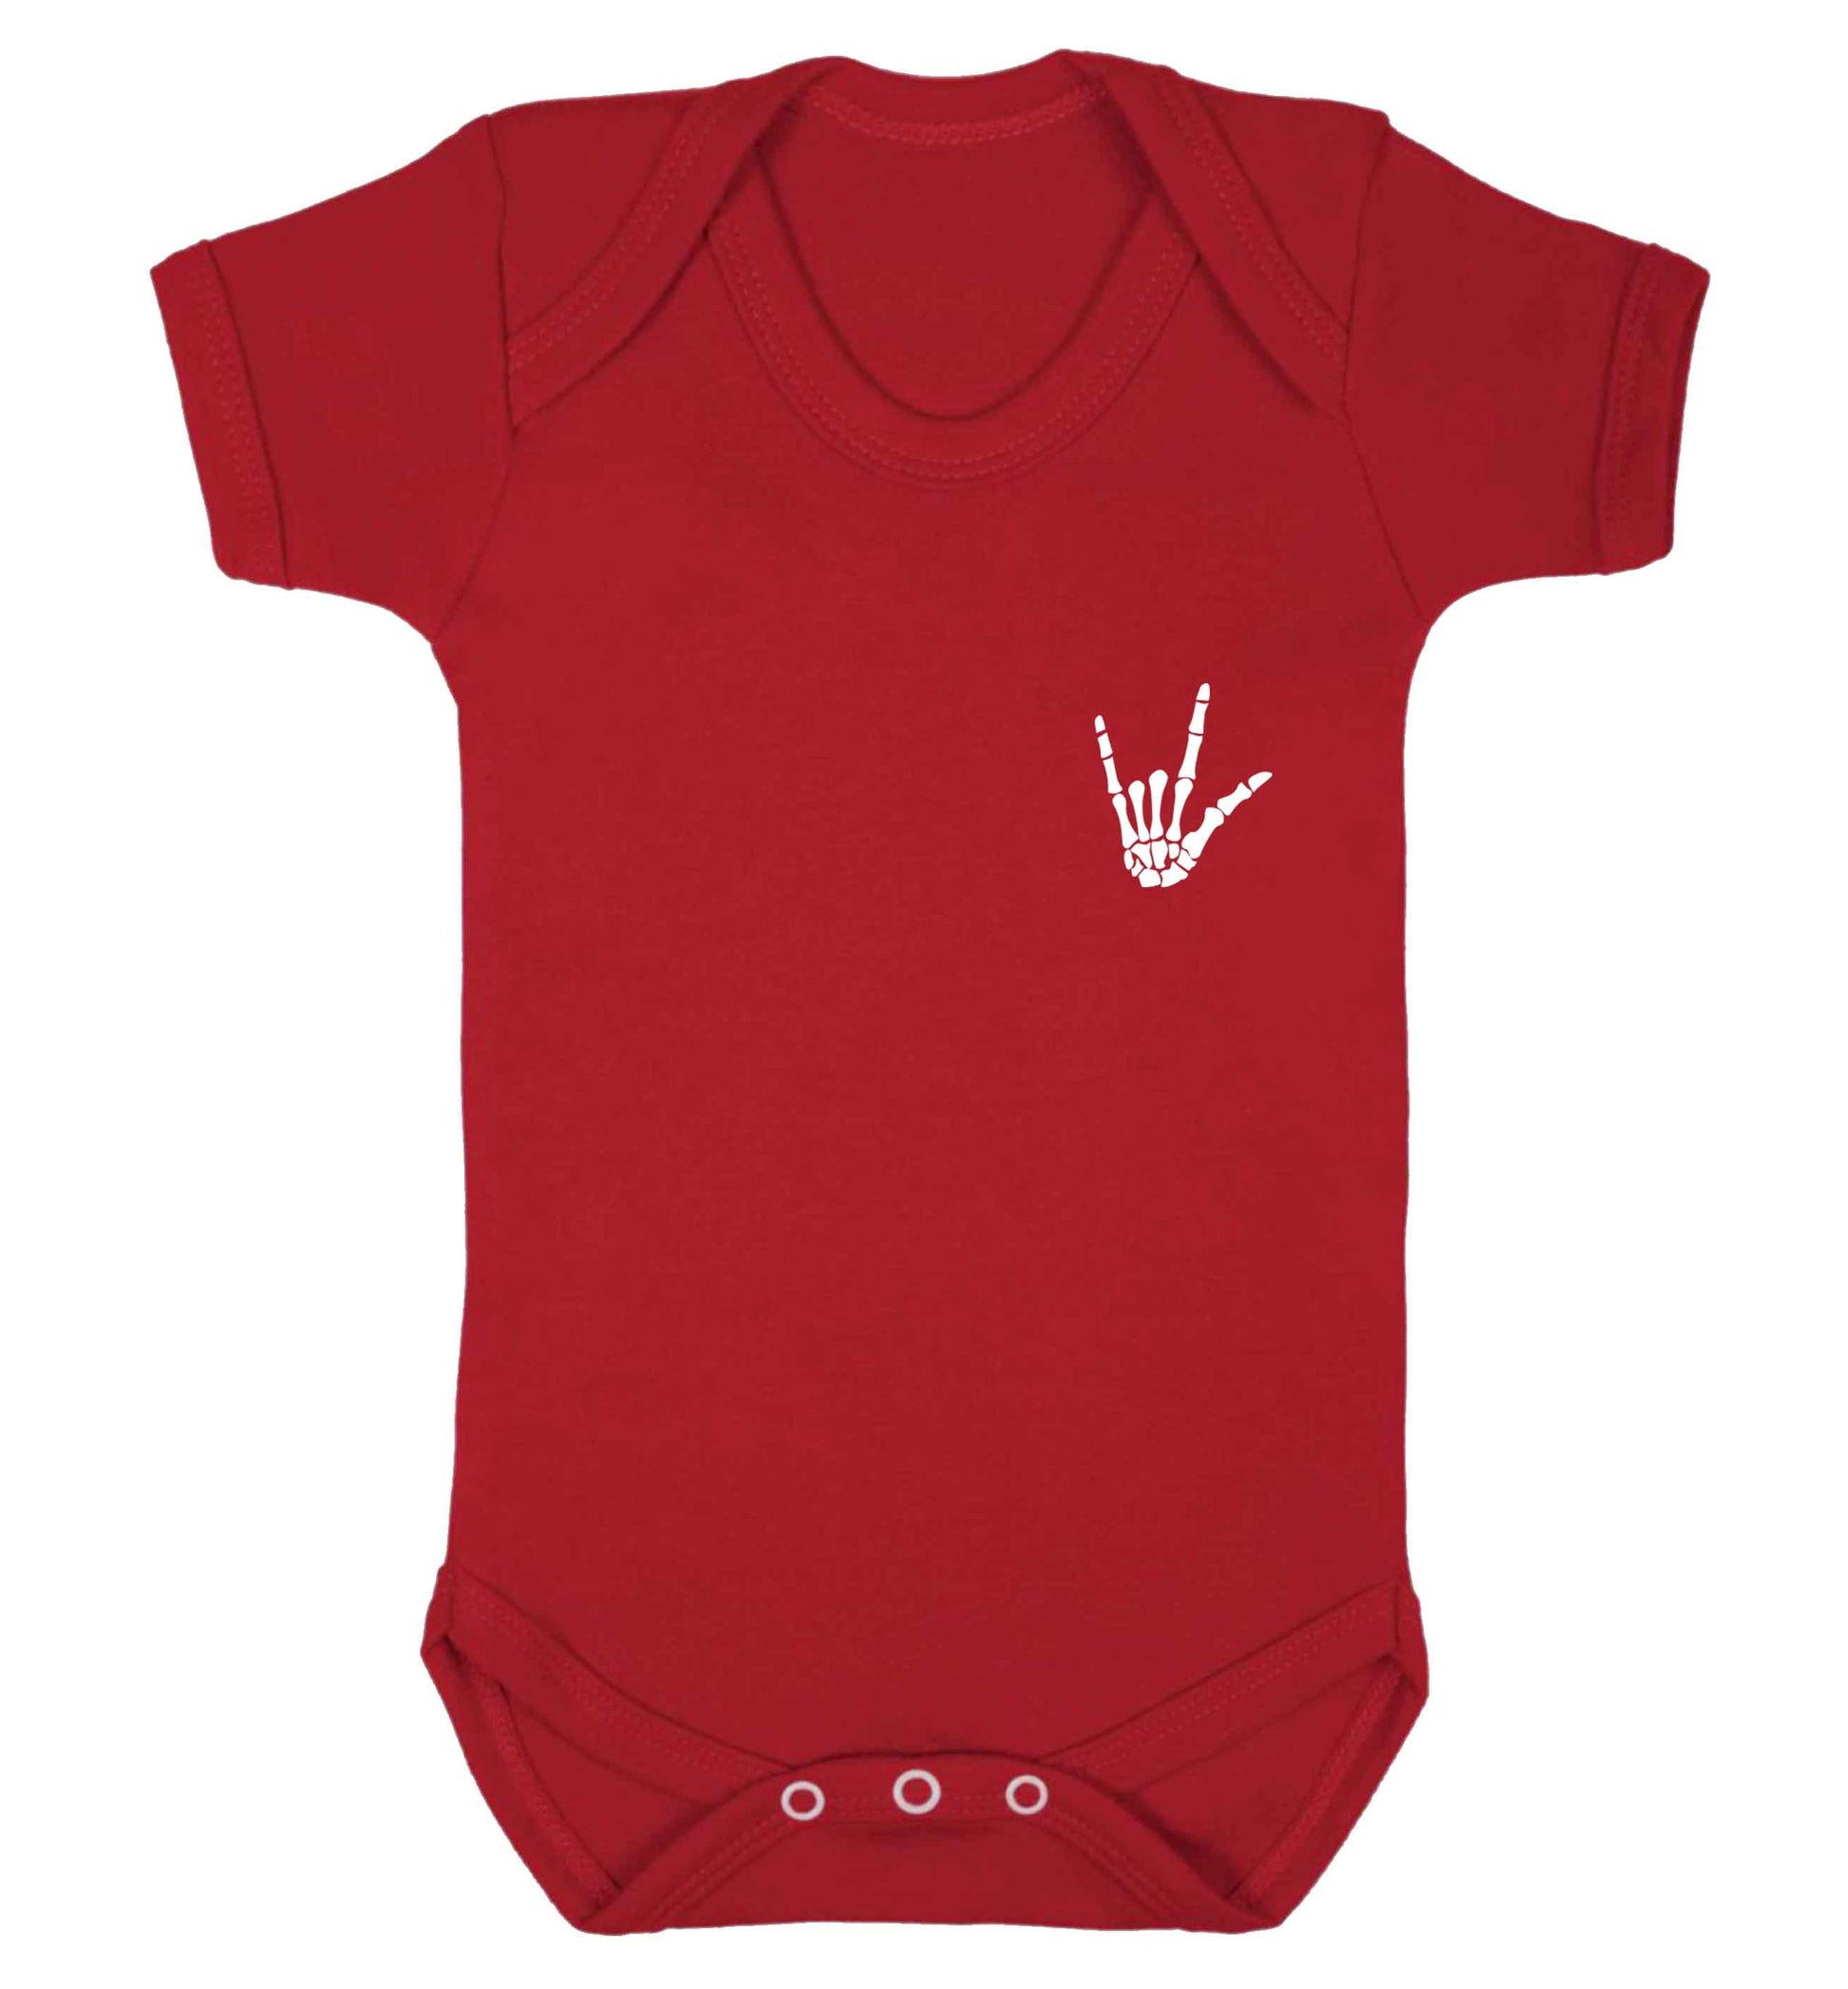 Skeleton Hand Pocket baby vest red 18-24 months